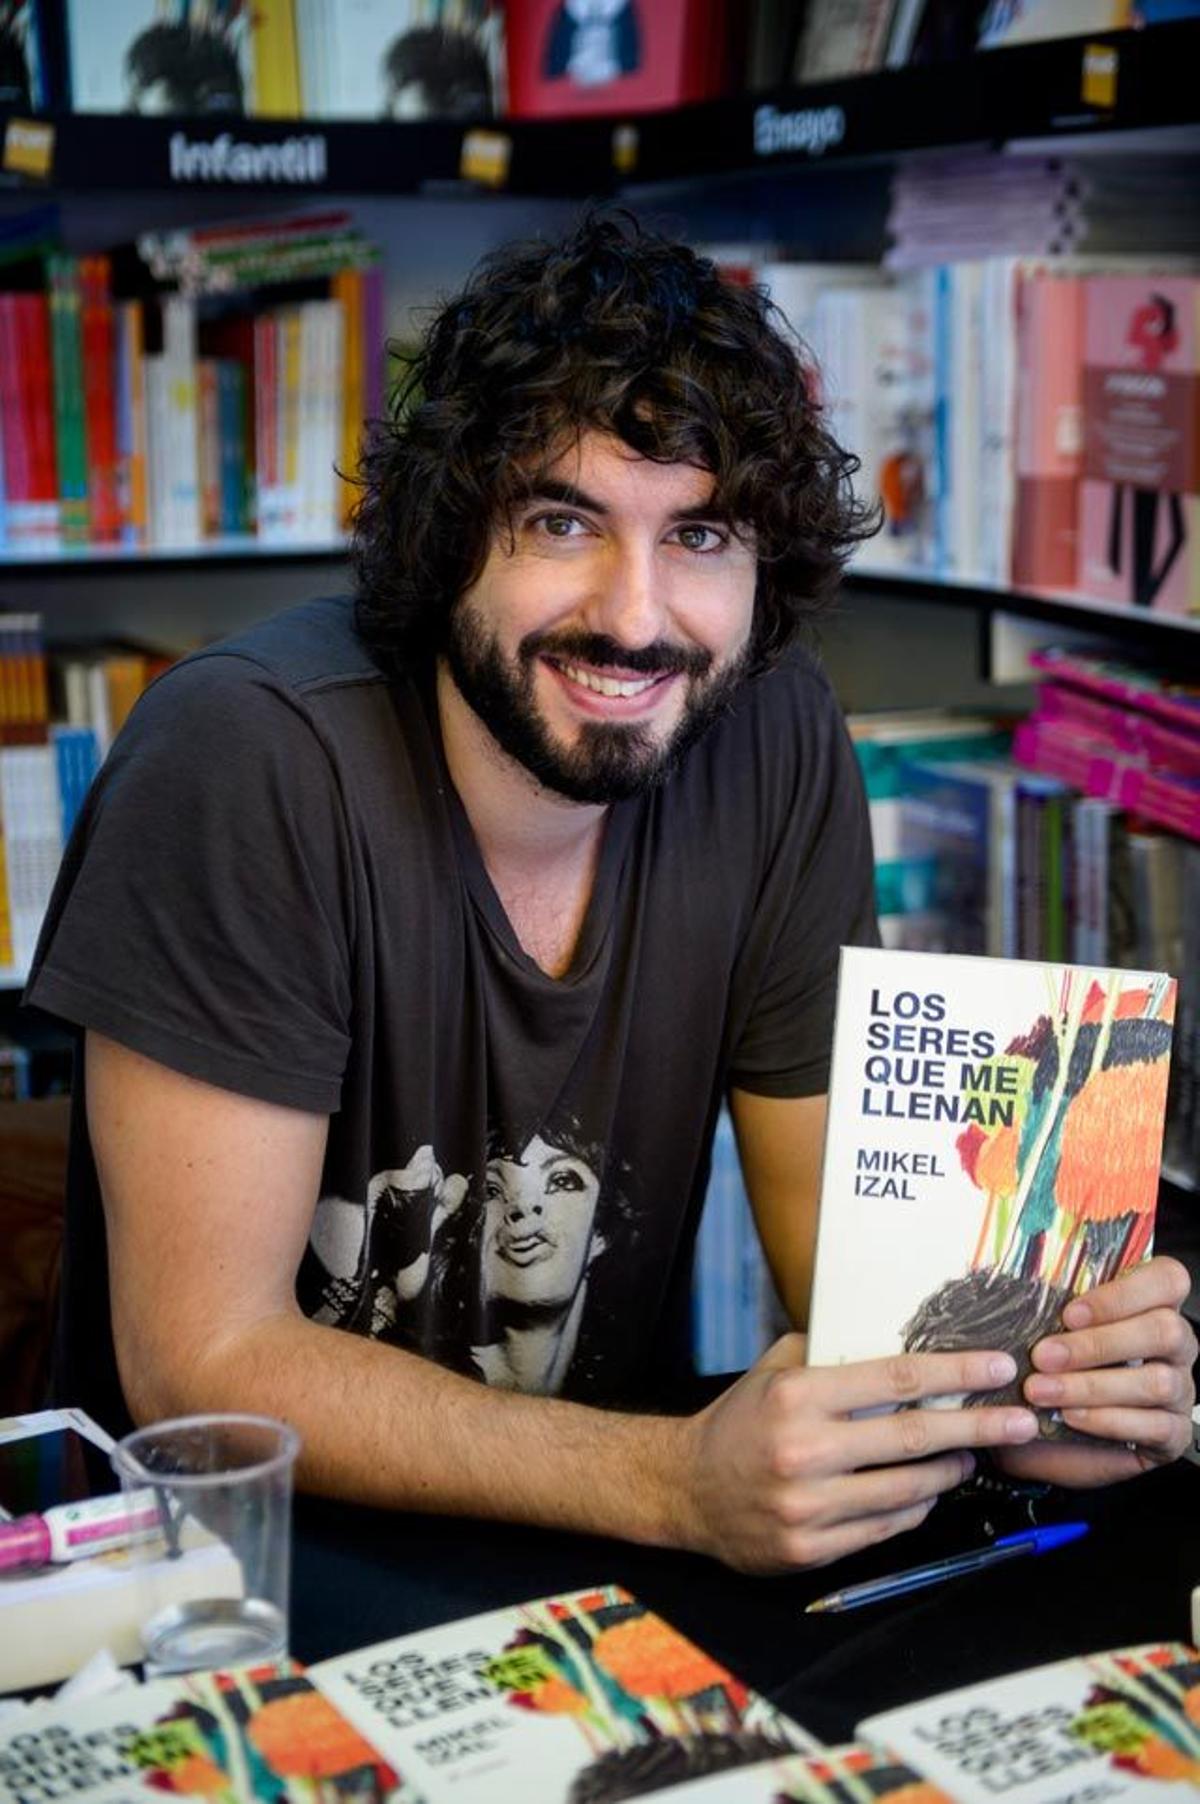 El cantante Mikel Izal posa sonriente junto a su libro Los seres que me llenan en la Feria del Libro de Madrid.